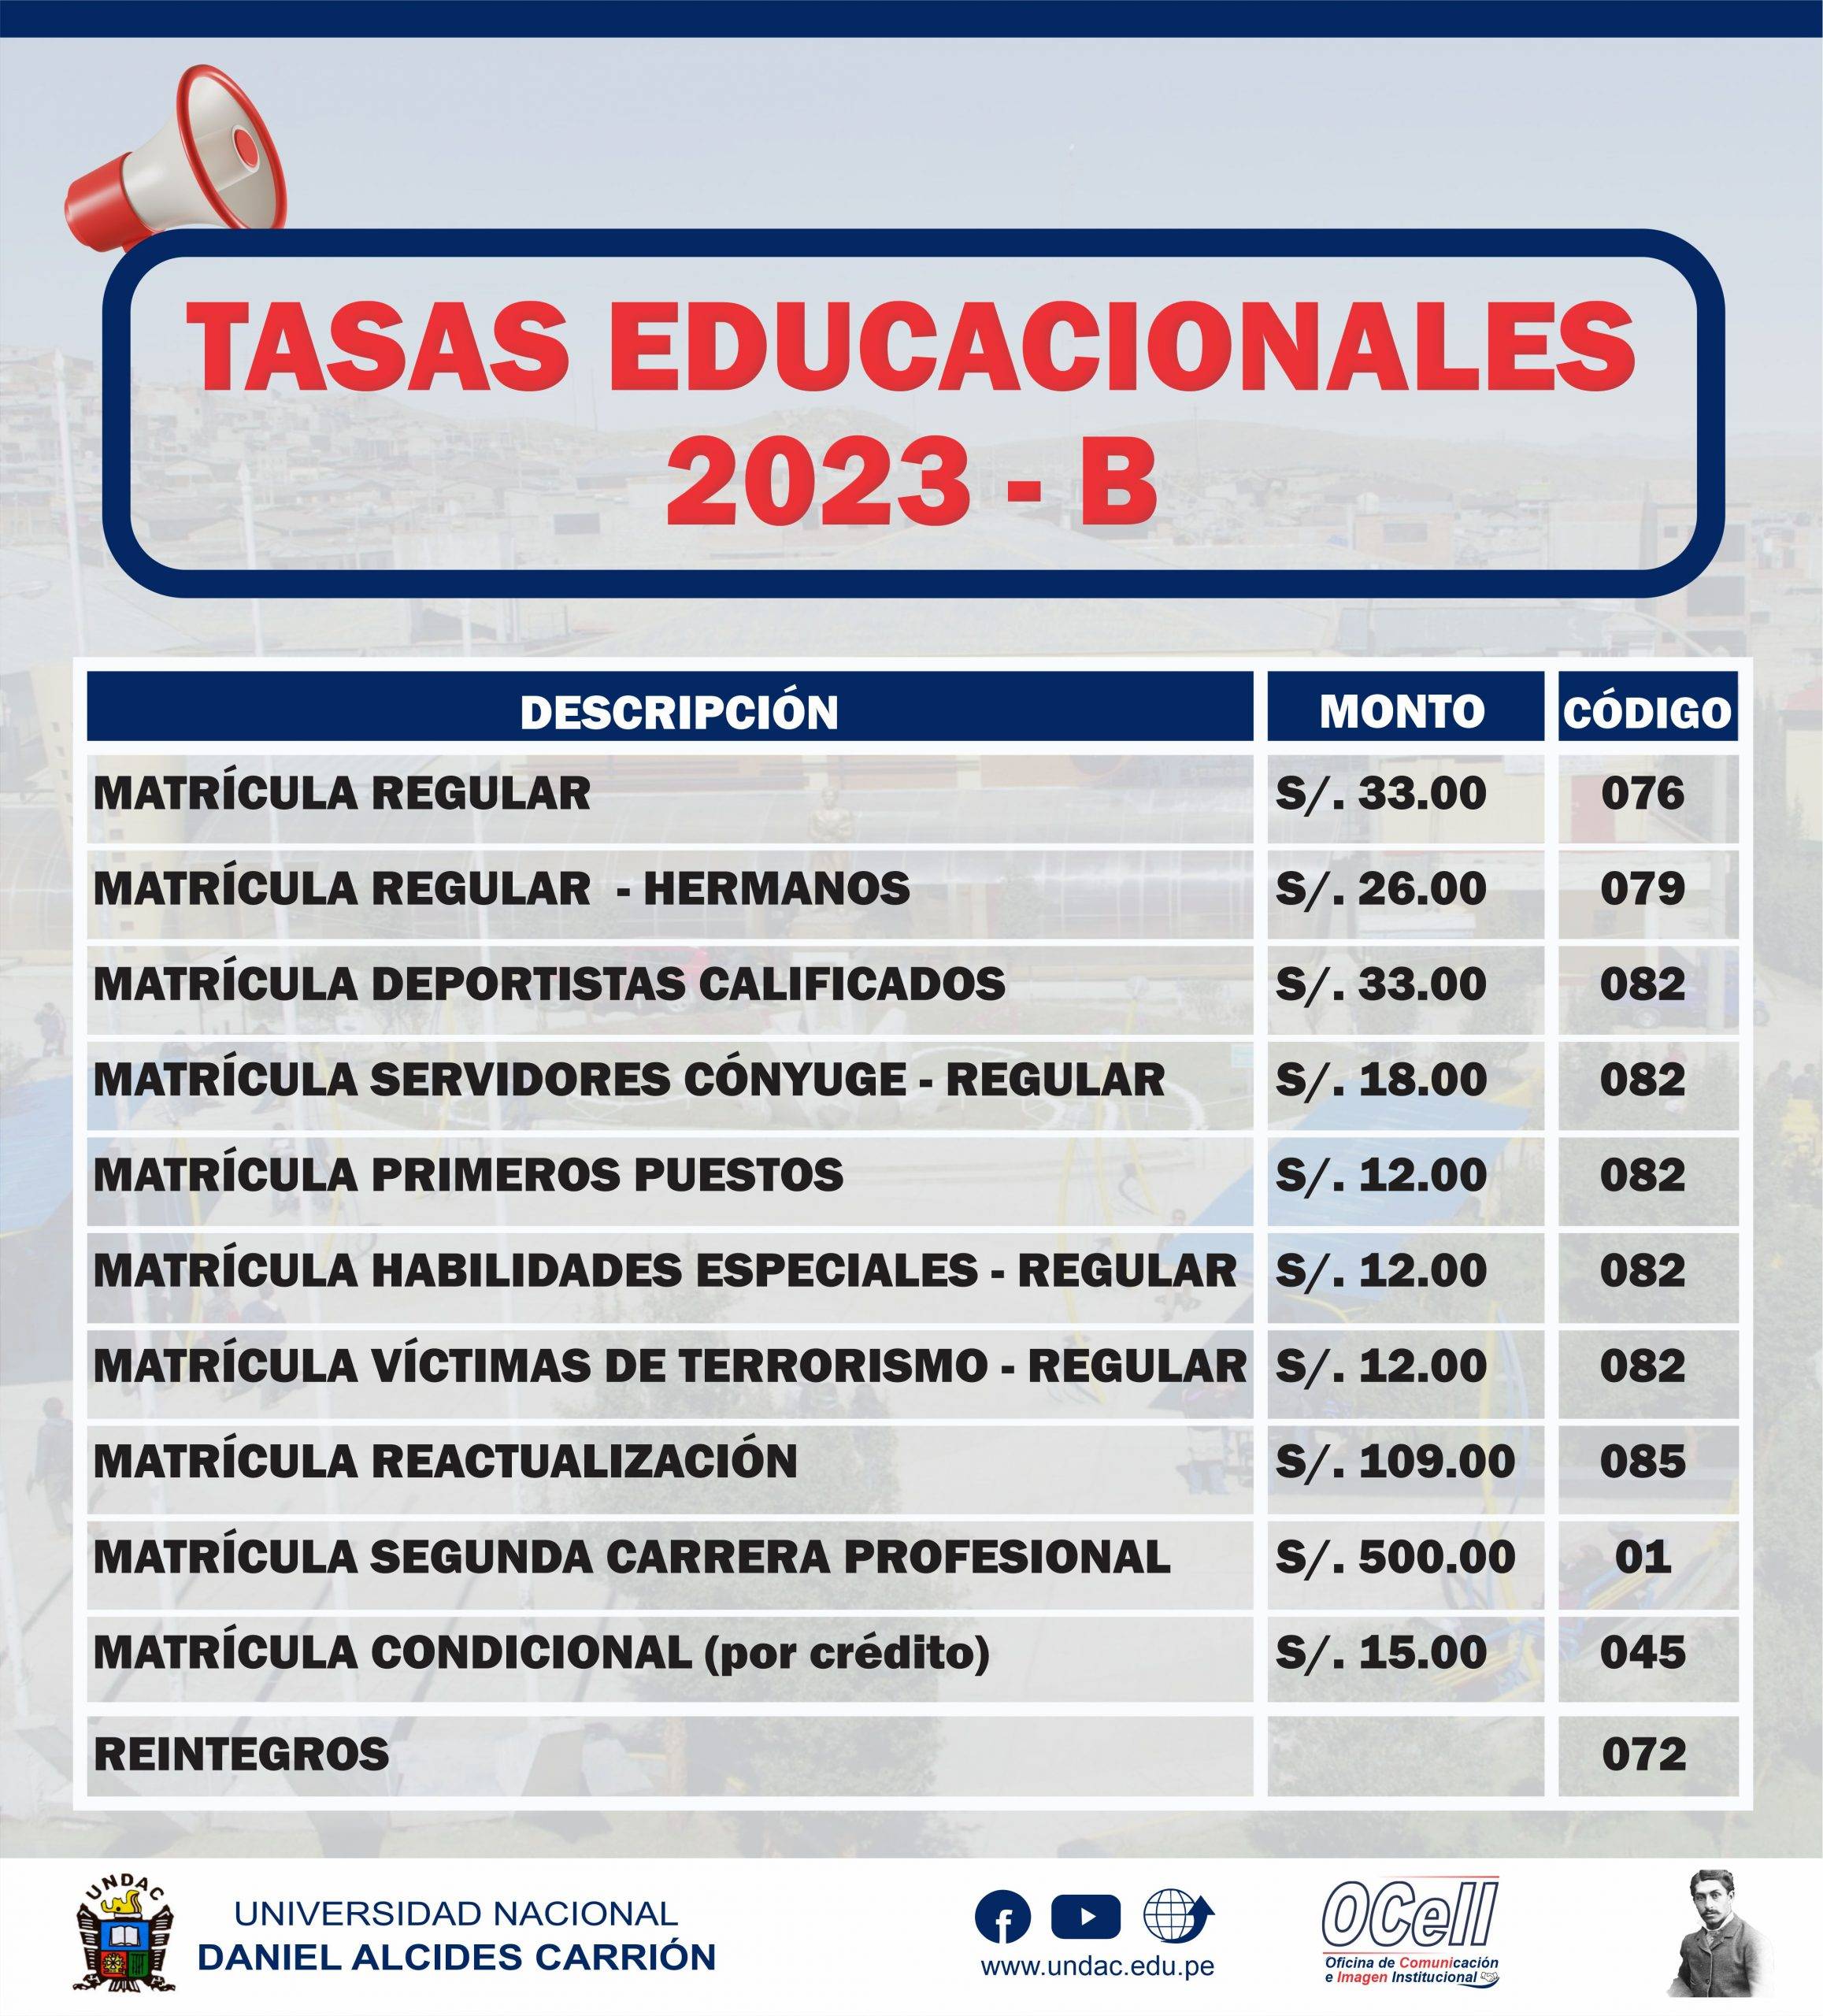 En este momento estás viendo TASAS EDUCACIONALES 2023B